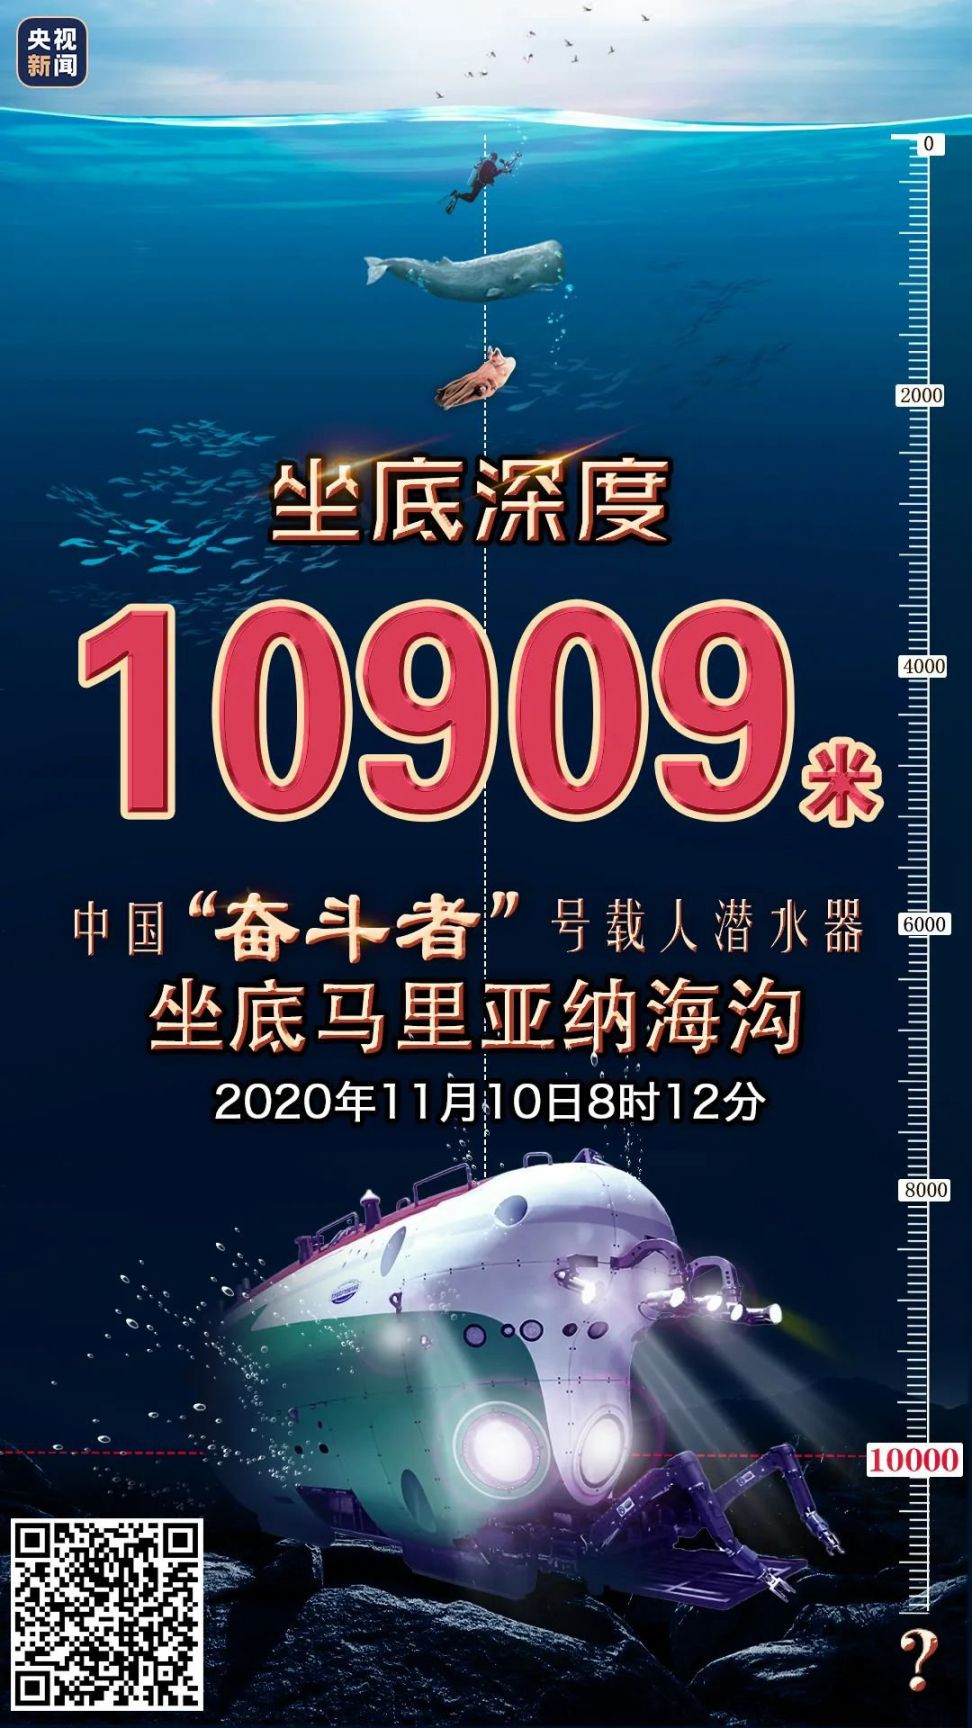 中国奋斗者号载人潜水器下潜直播时间直播入口